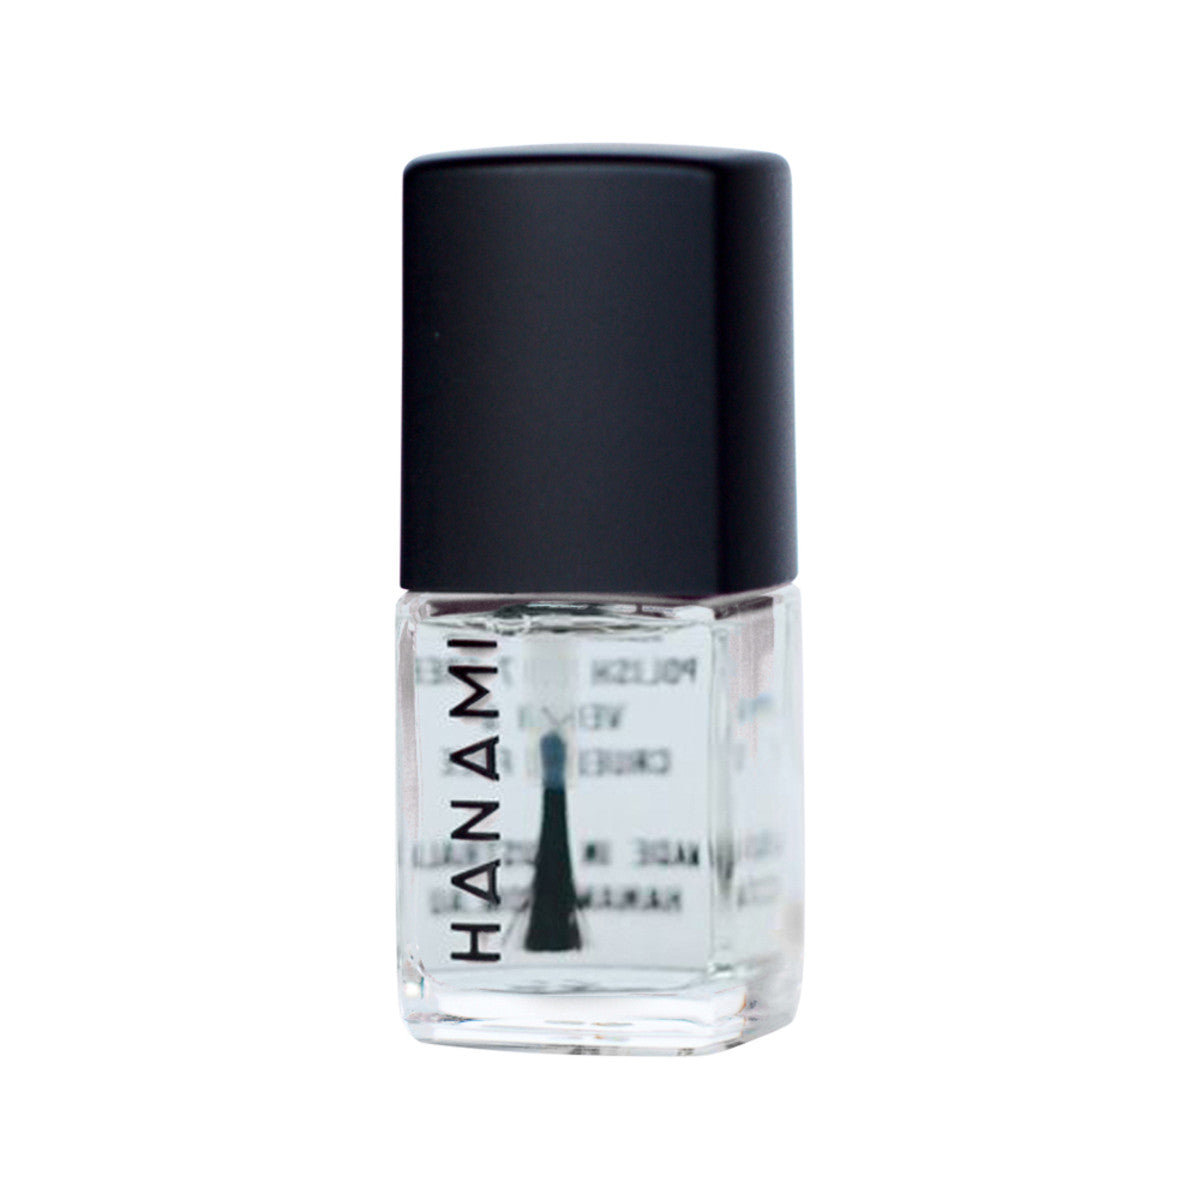 Hanami - Nail Polish Top and Base Coat Fast Dry 15ml